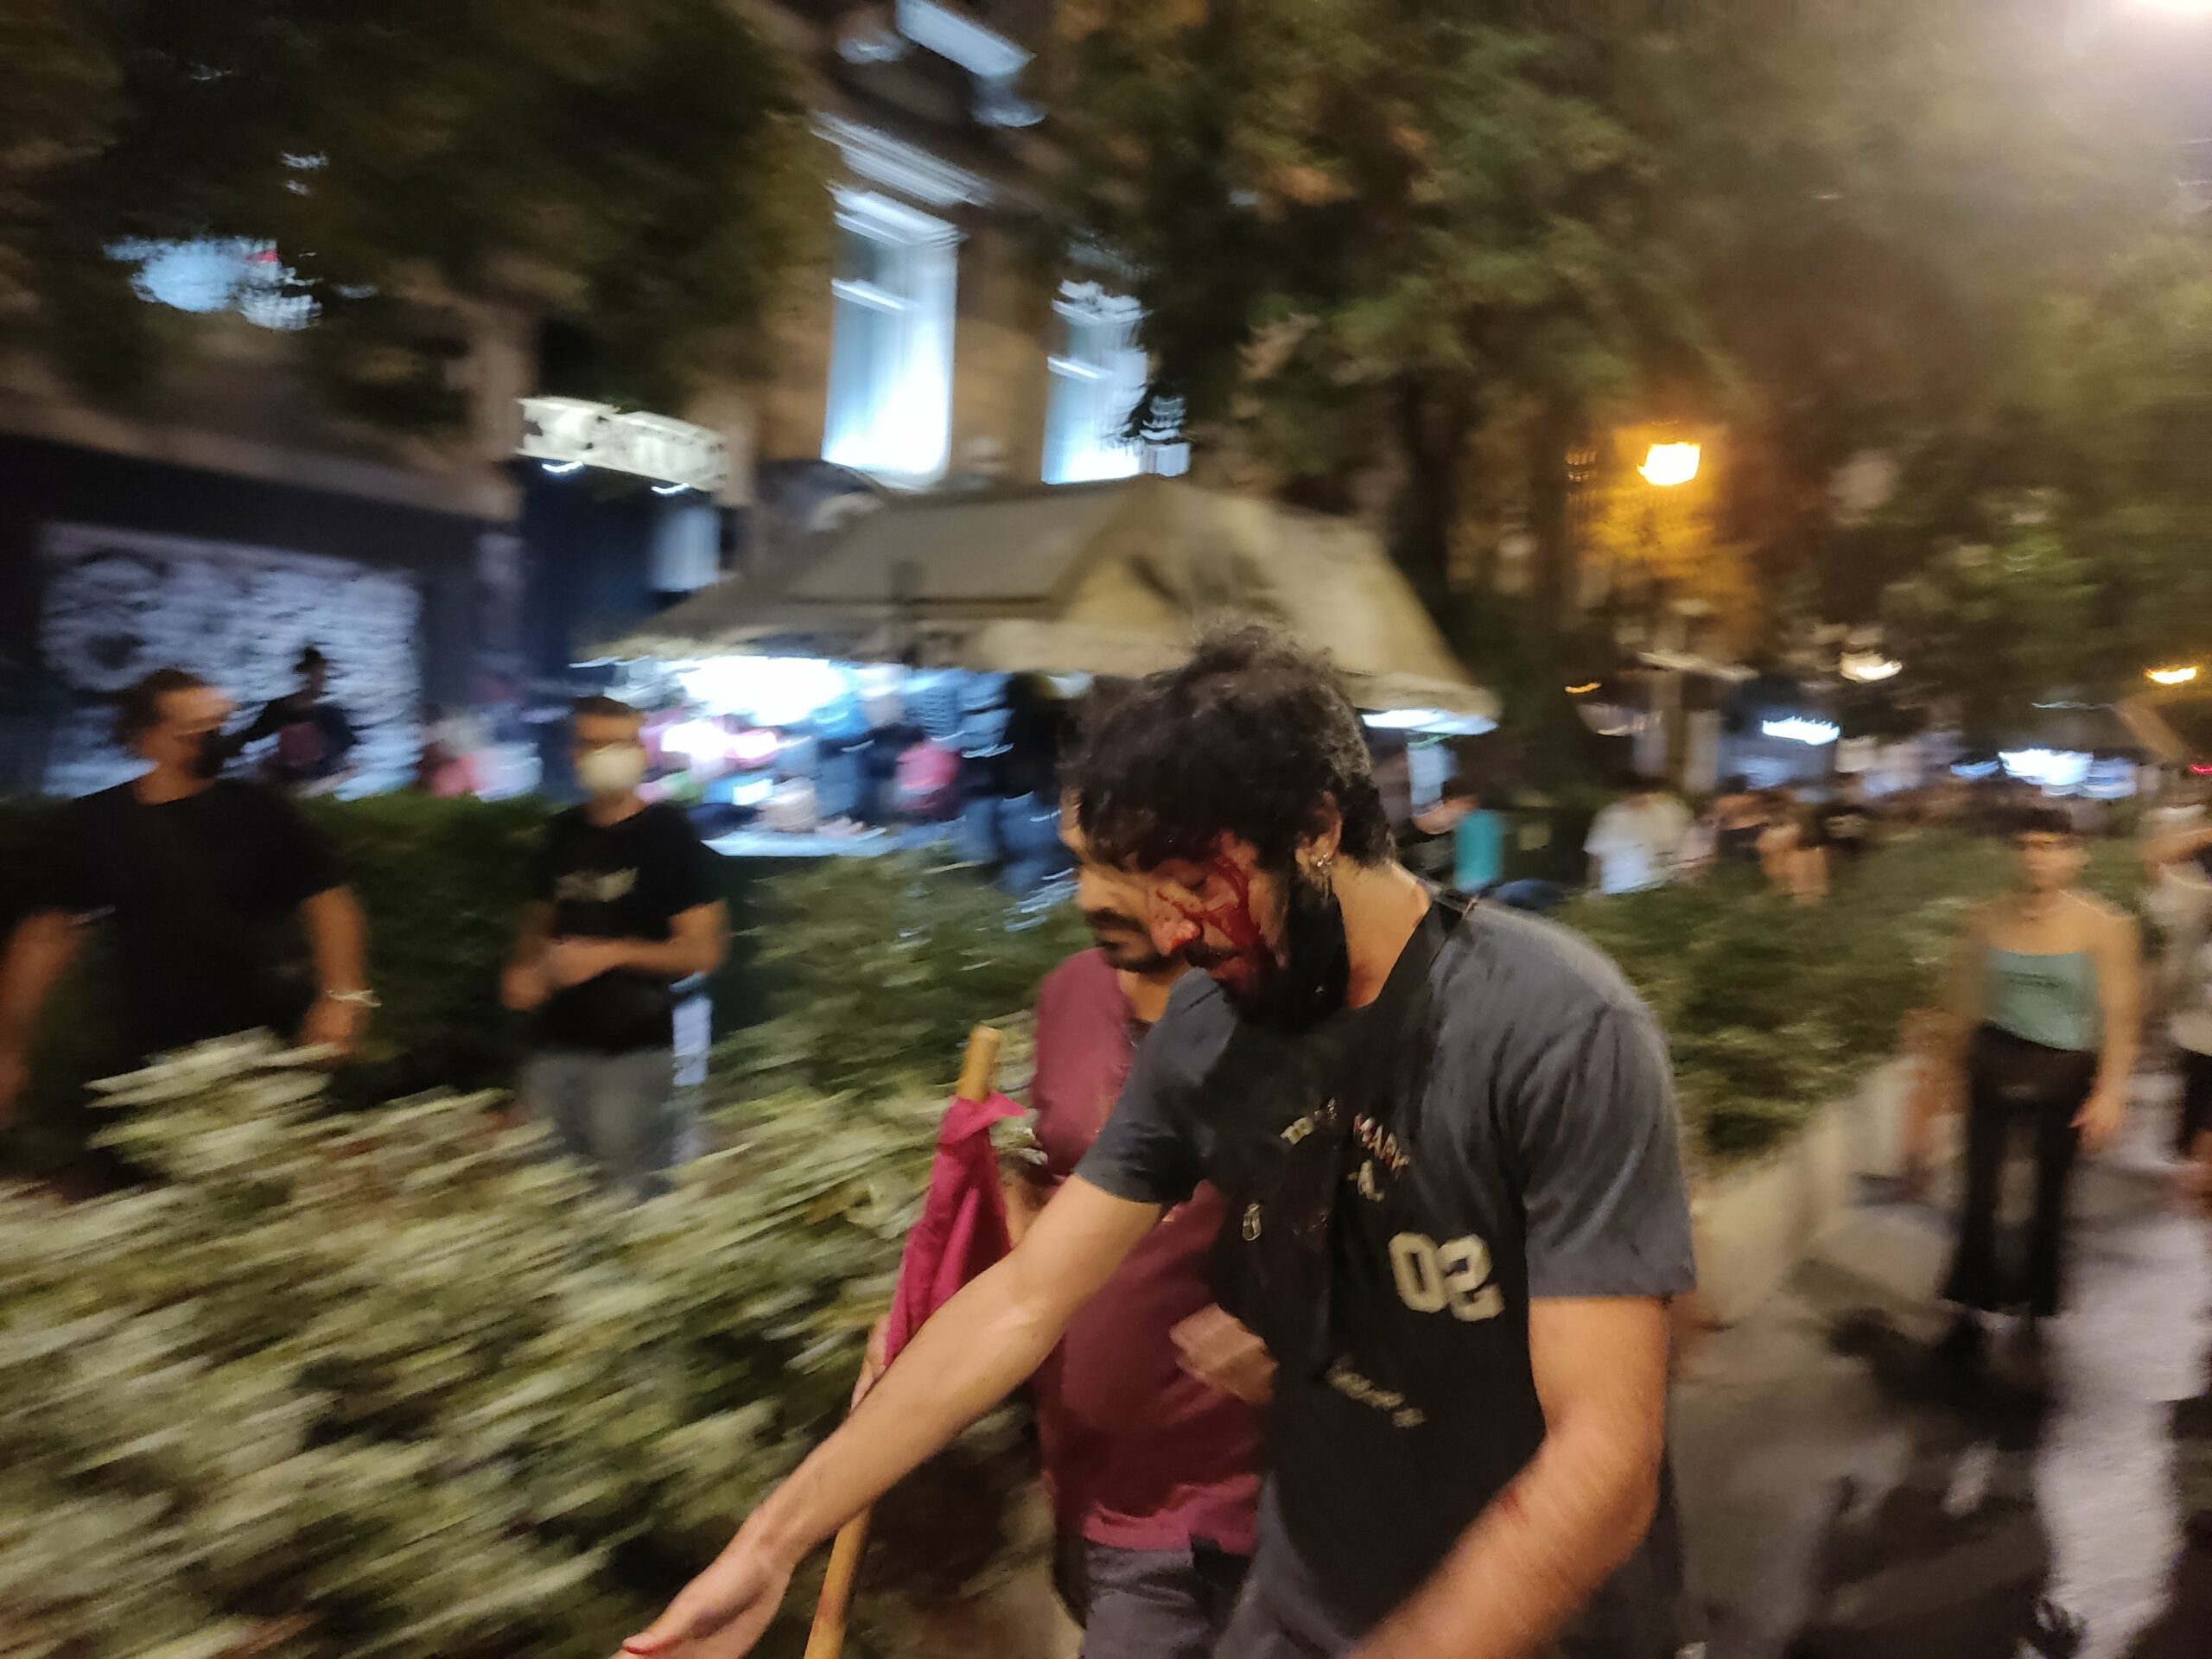 ΚΝΕ: Καταγγέλλει απρόκλητη επίθεση της Αστυνομίας και τραυματισμό φοιτητών